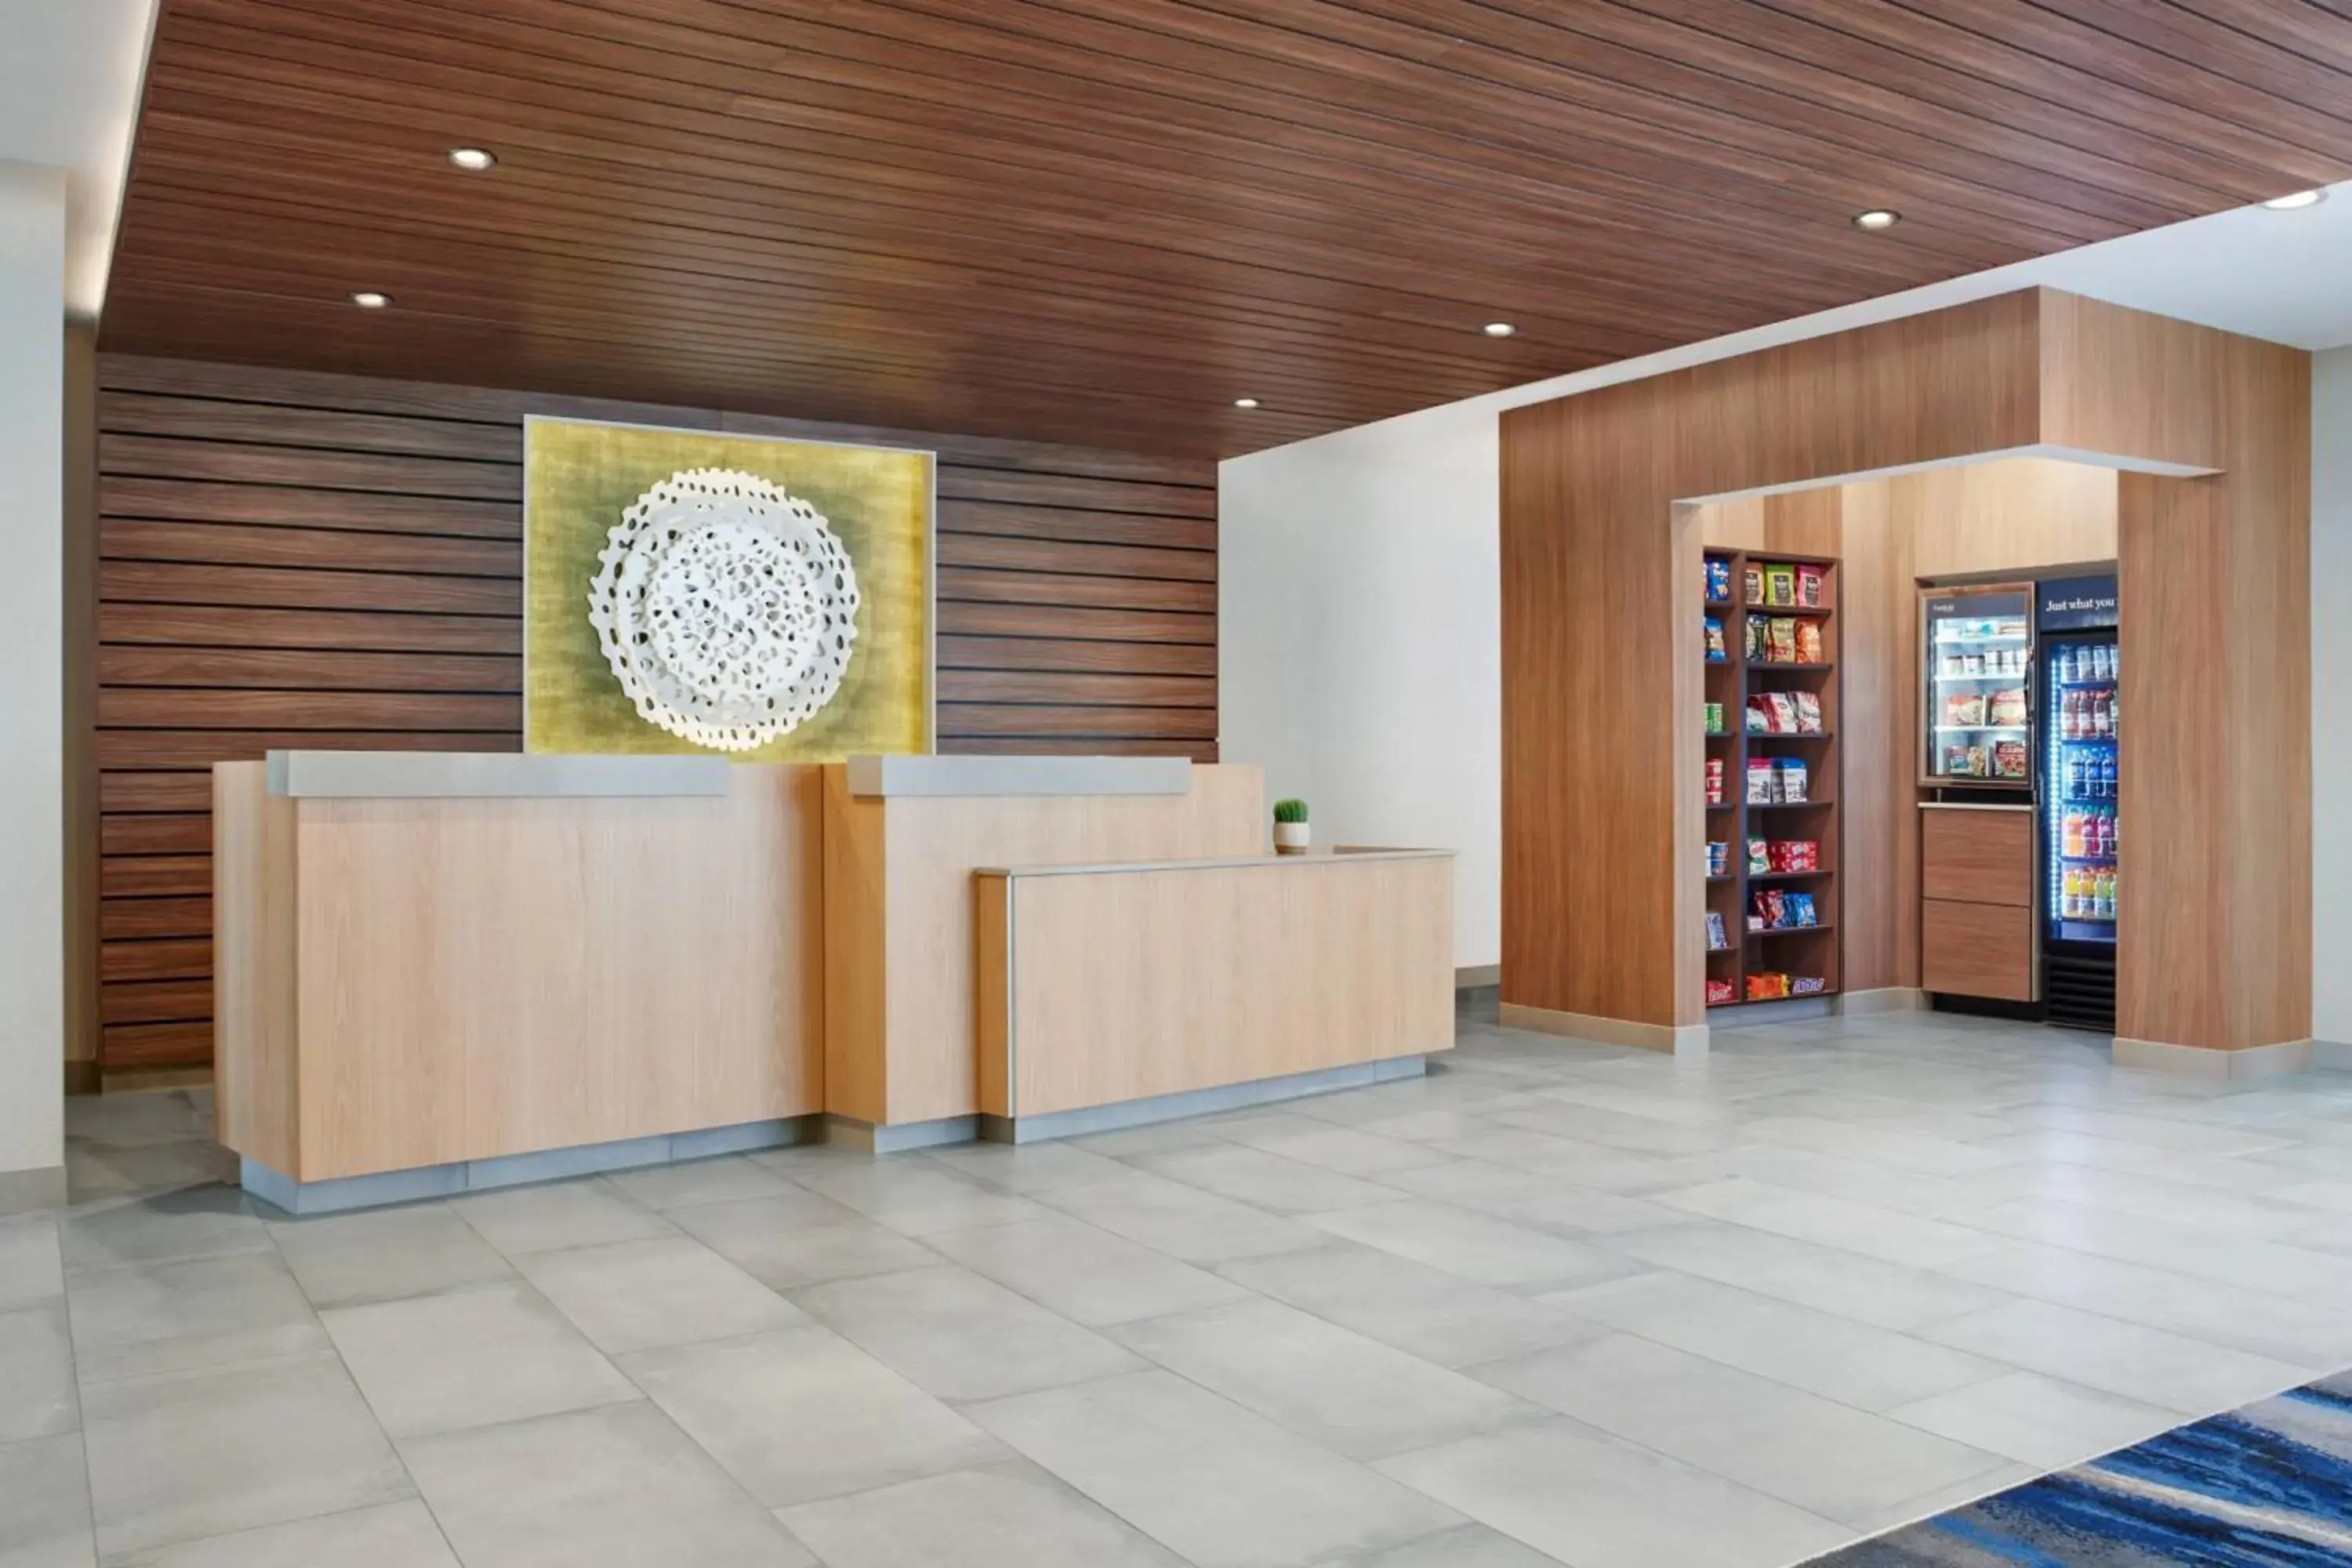 Lobby or reception, Lobby/Reception in Fairfield by Marriott Inn & Suites Tempe